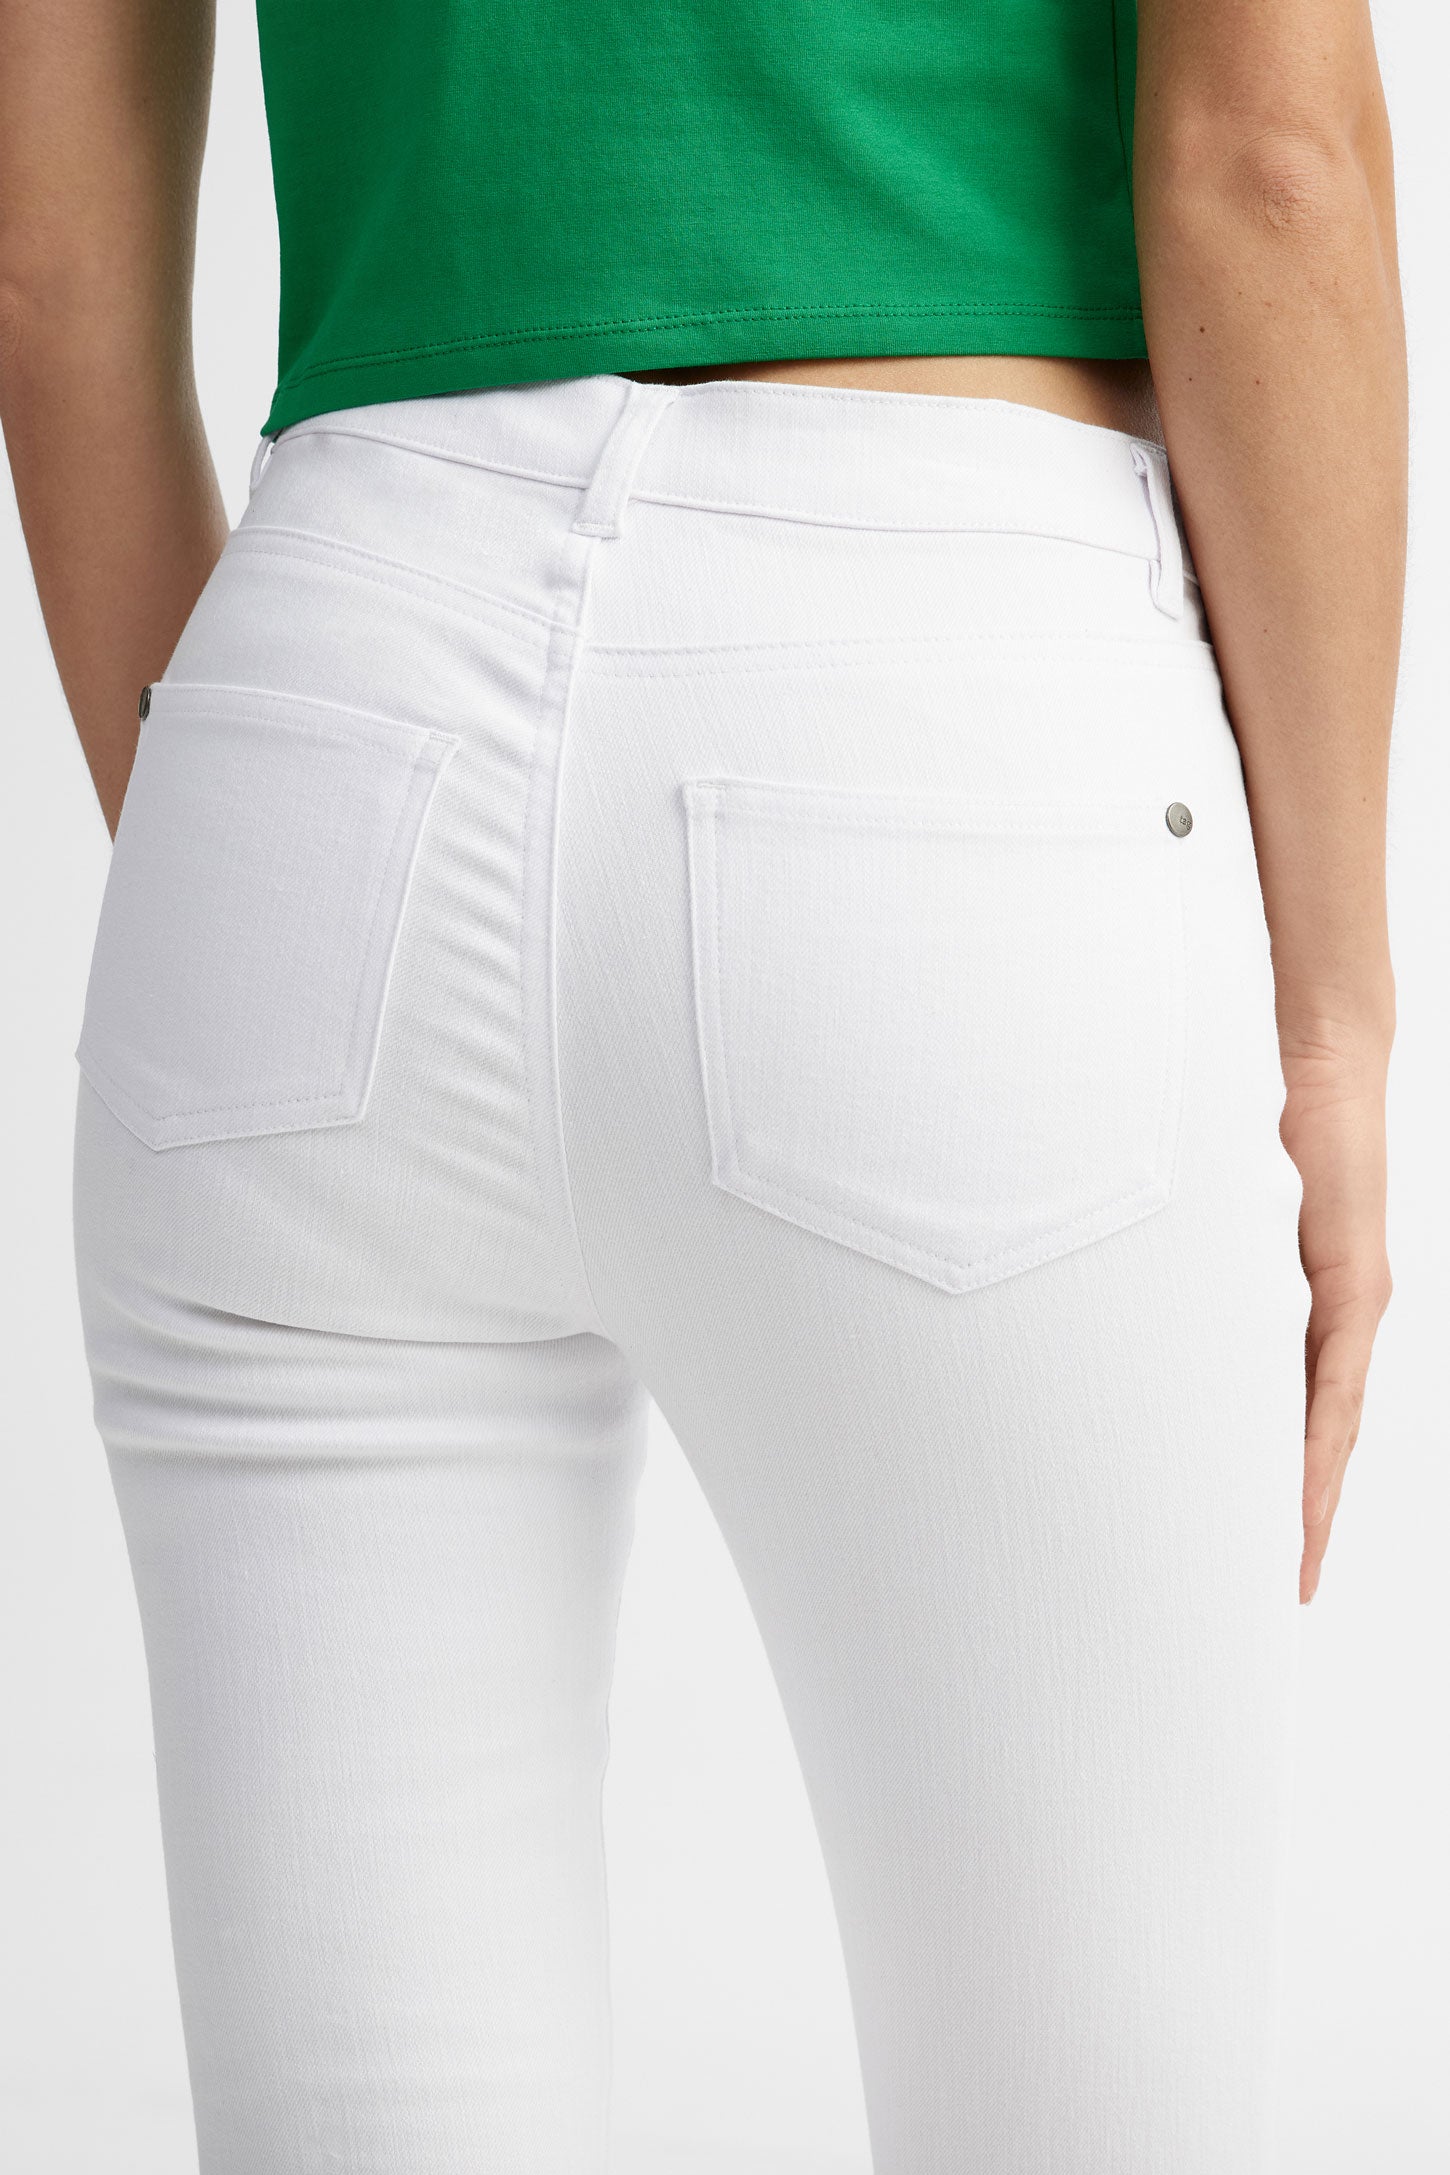 Capri 5 poches coupe ajustée en coton - Femme && BLANC